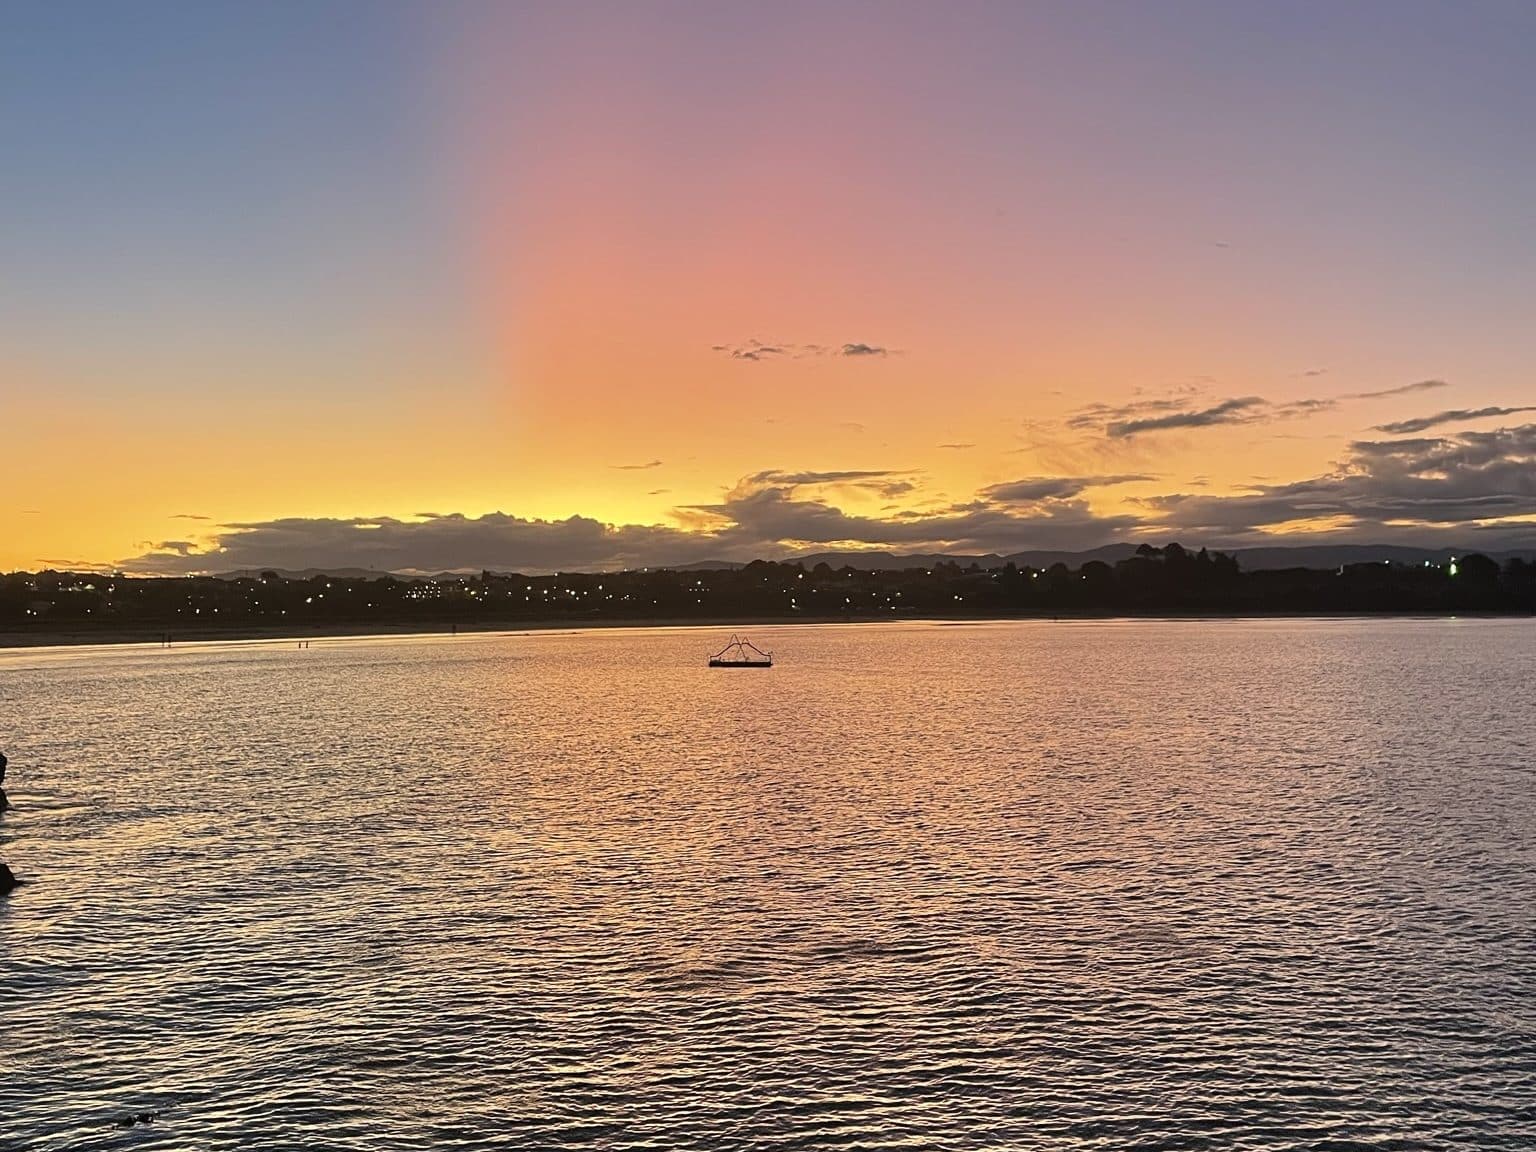 Fantastyczny zachód słońca tuż przed pójściem spać | Darmowe kempingi w Nowej Zelandii